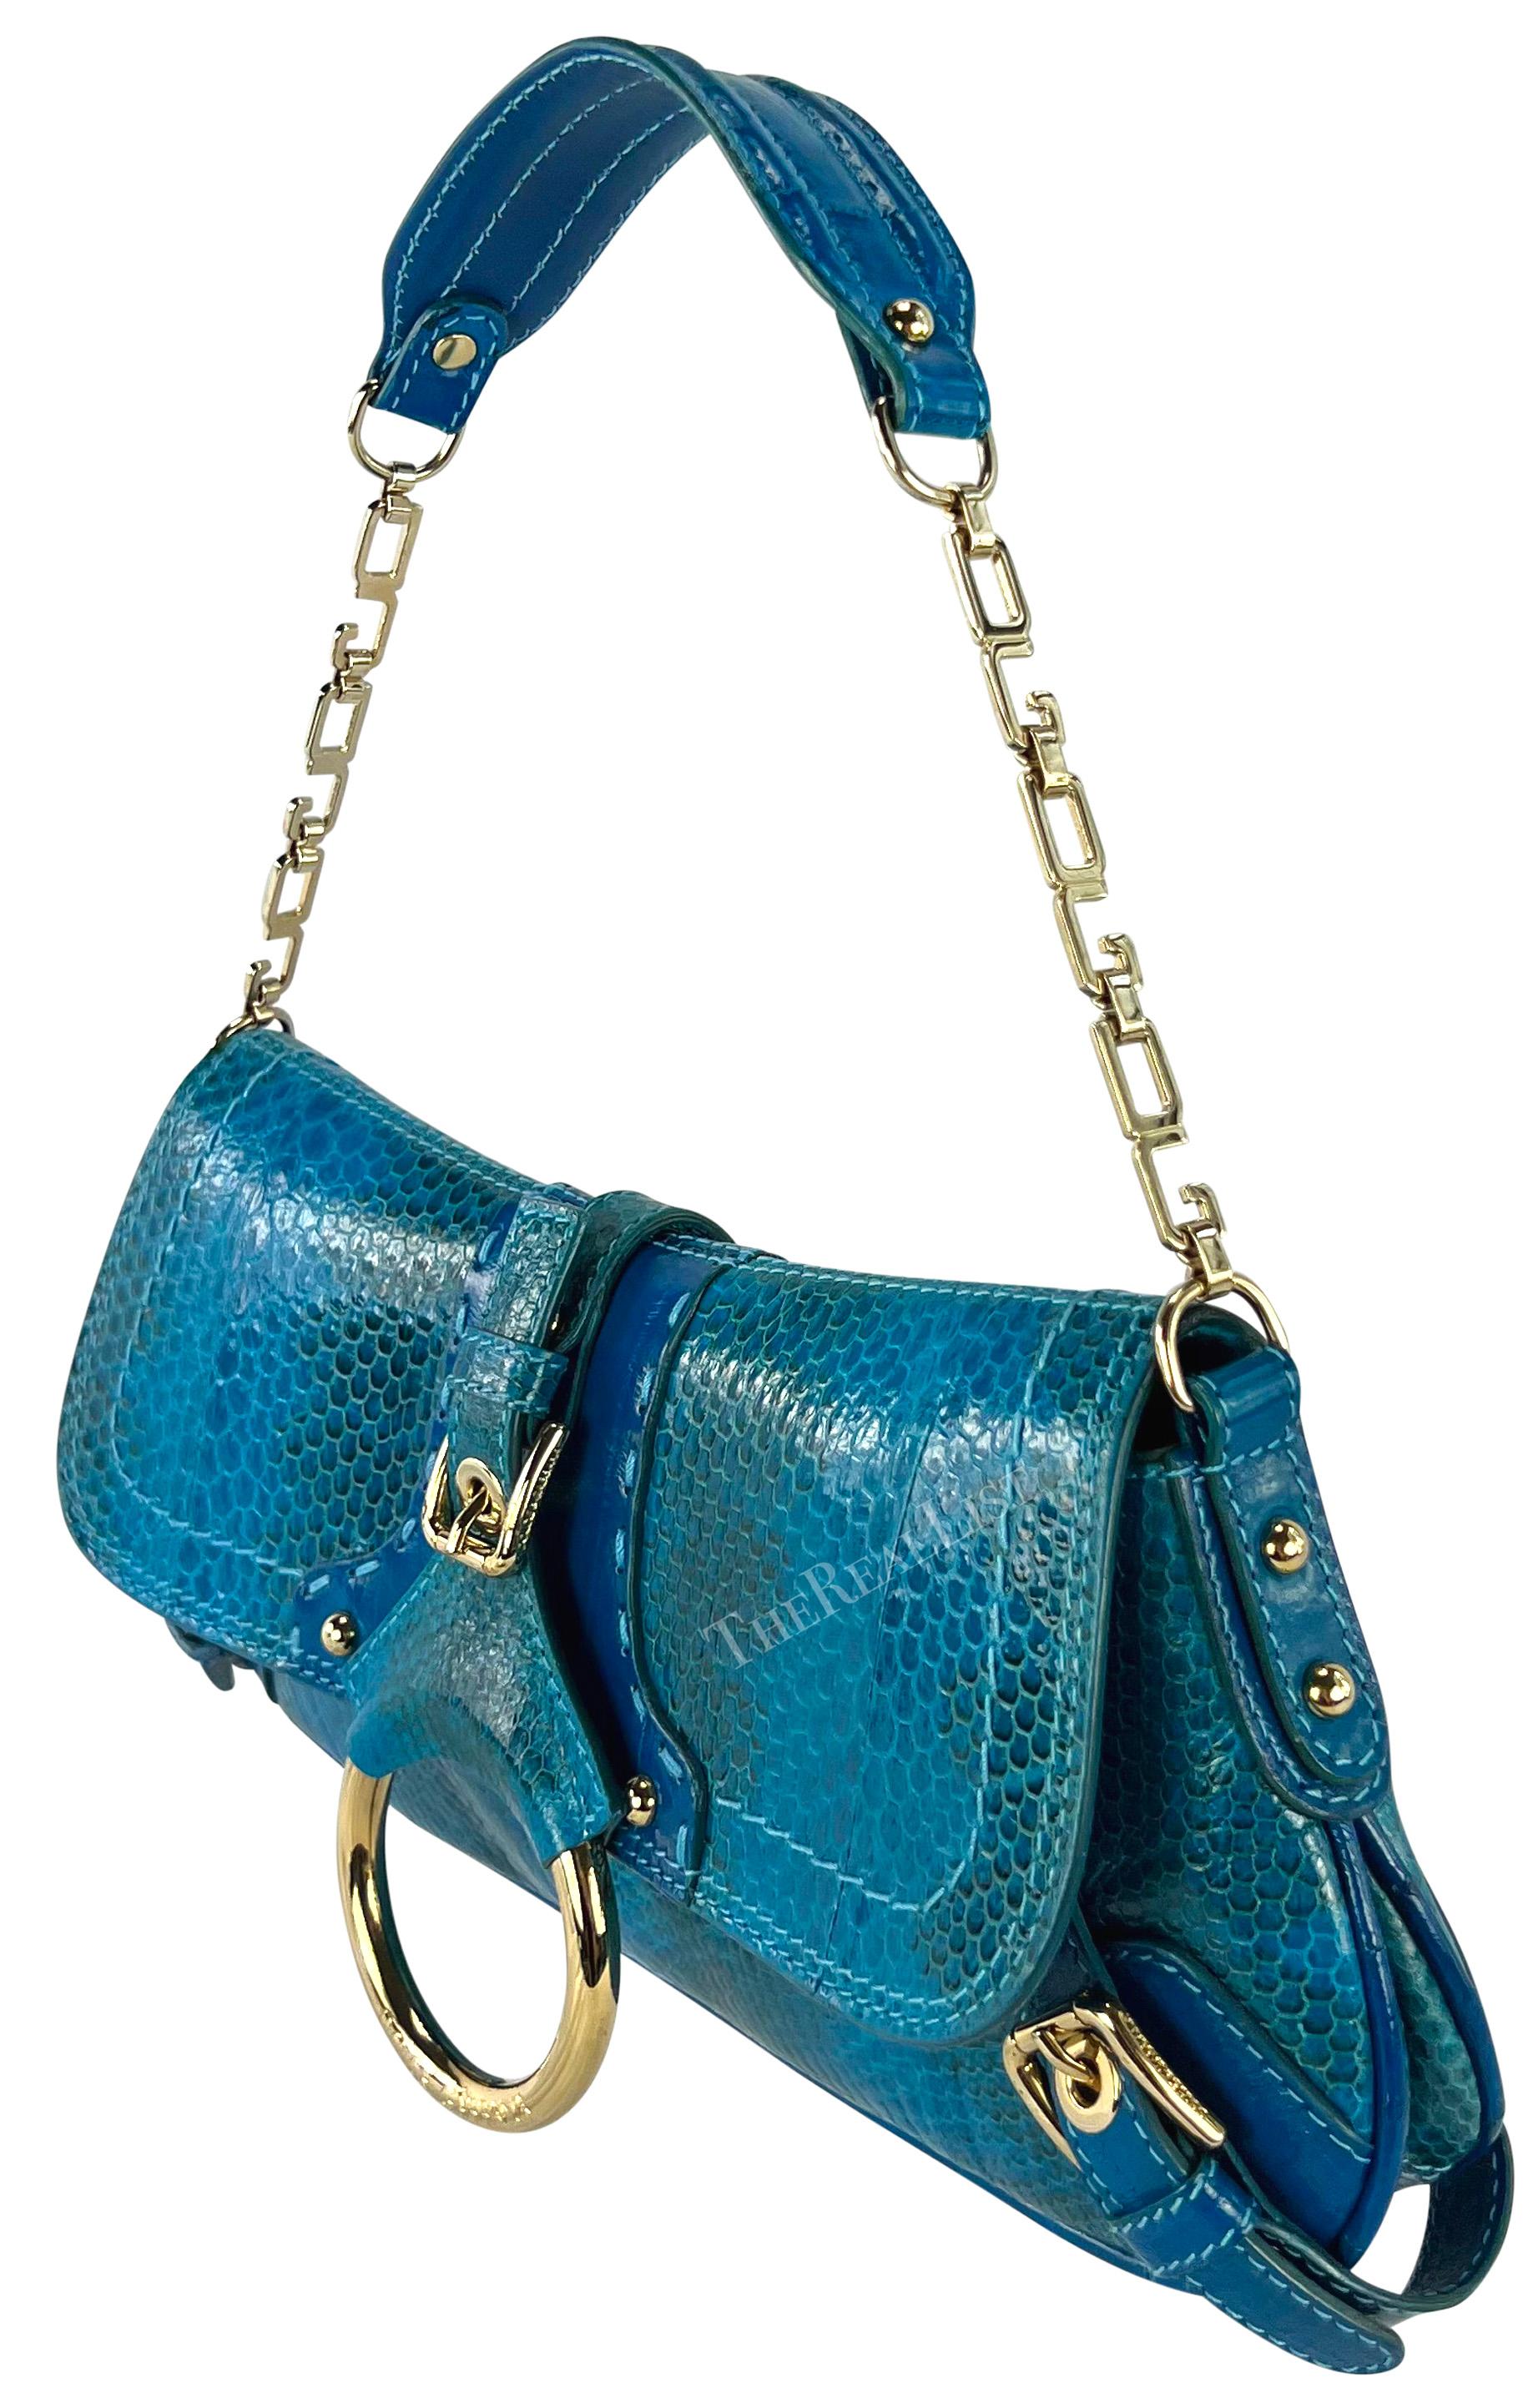 Issu de la collection automne/hiver 2004, ce fabuleux sac à bandoulière Dolce & Gabbana gaufré en python bleu vif est principalement constitué de peau de python bleu vibrant avec des accents de peau d'anguille bleue. Ce sac à rabat est doté